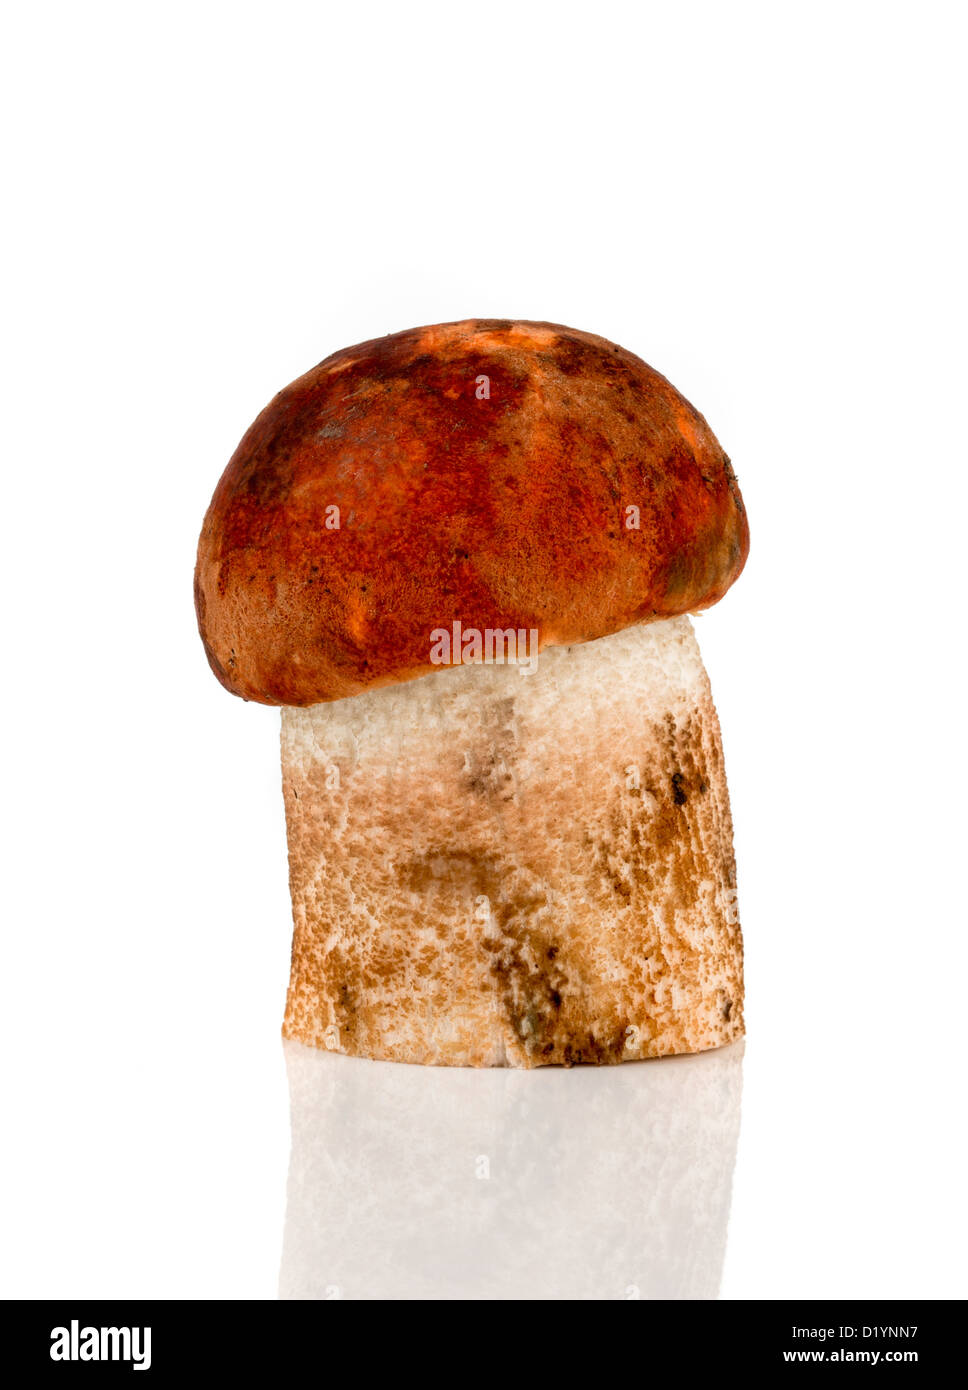 Orange-cap Boletus mushroom on a white background Stock Photo